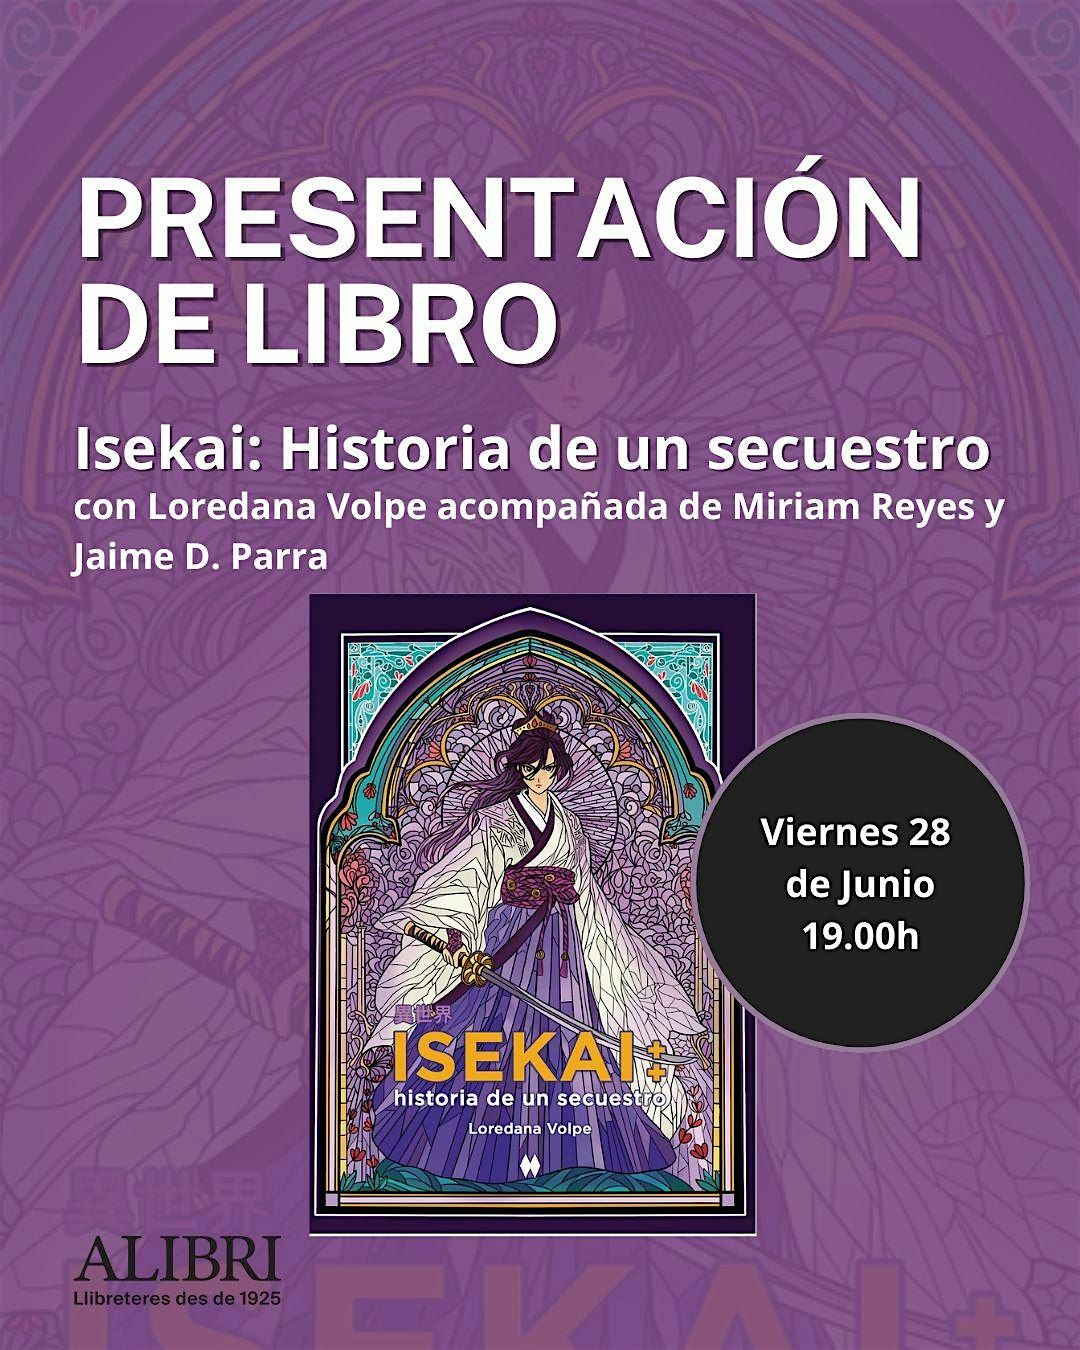 Presentaci\u00f3n del libro  "Isekai" de Loredana Volpe en la Librer\u00eda Alibri en Barcelona.